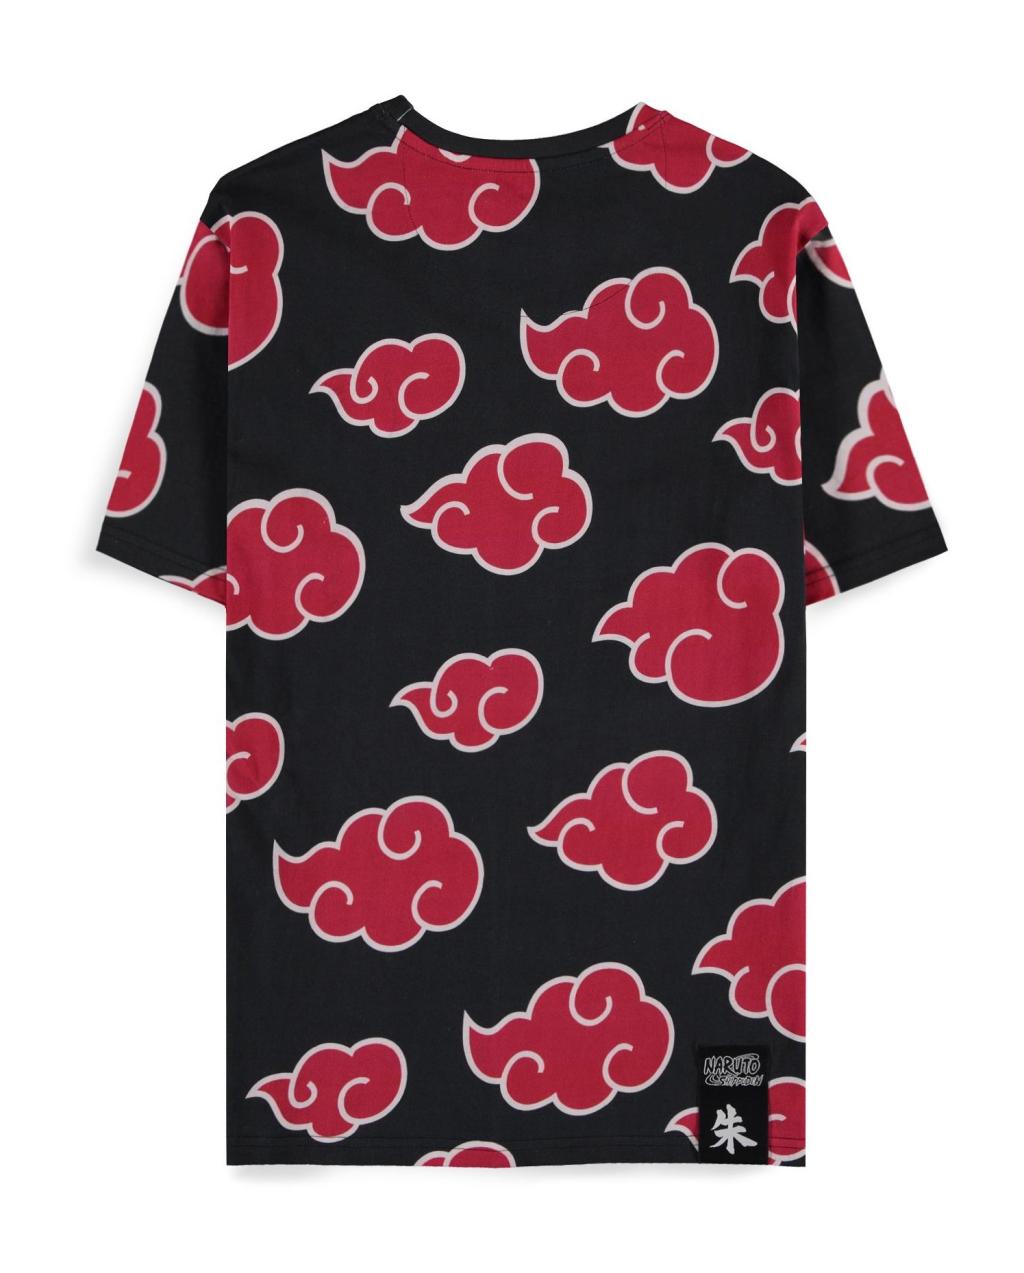 NARUTO SHIPPUDEN - Itachi Clouds - Men's T-shirt (M)